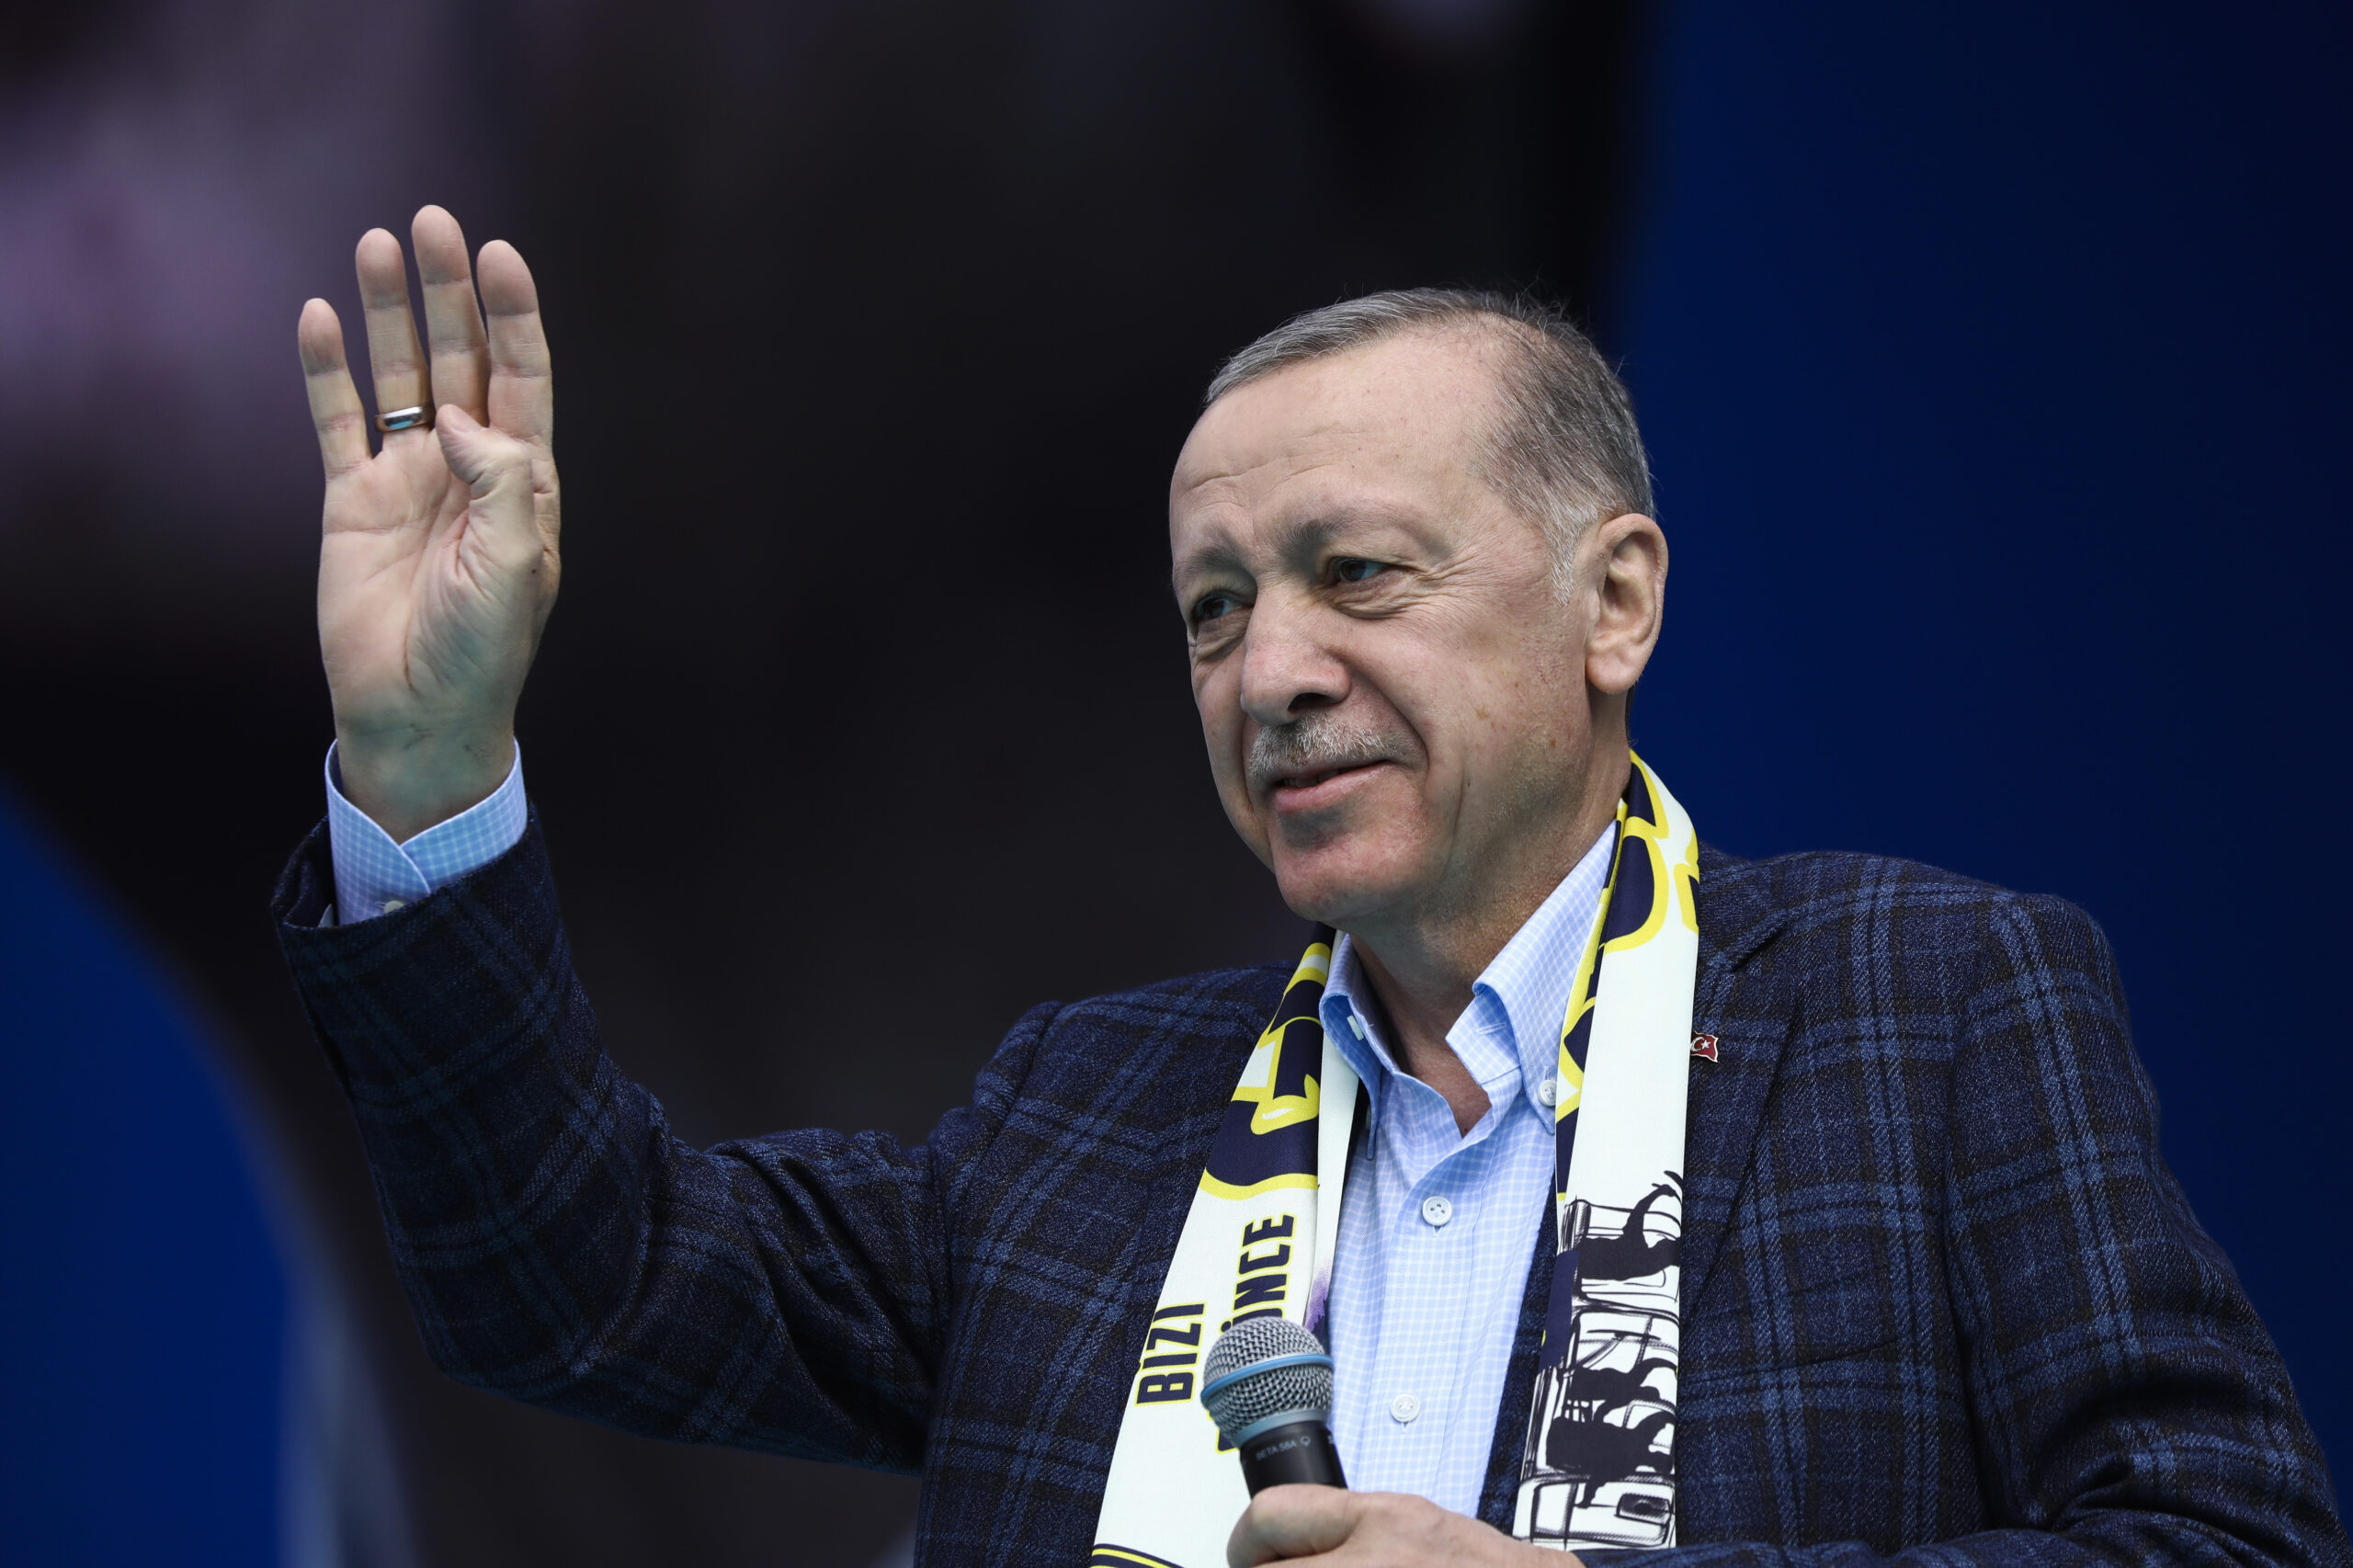 Νέα πενταετής θητεία για τον Ερντογάν – Ορκομωσία με διεθνείς παρουσίες